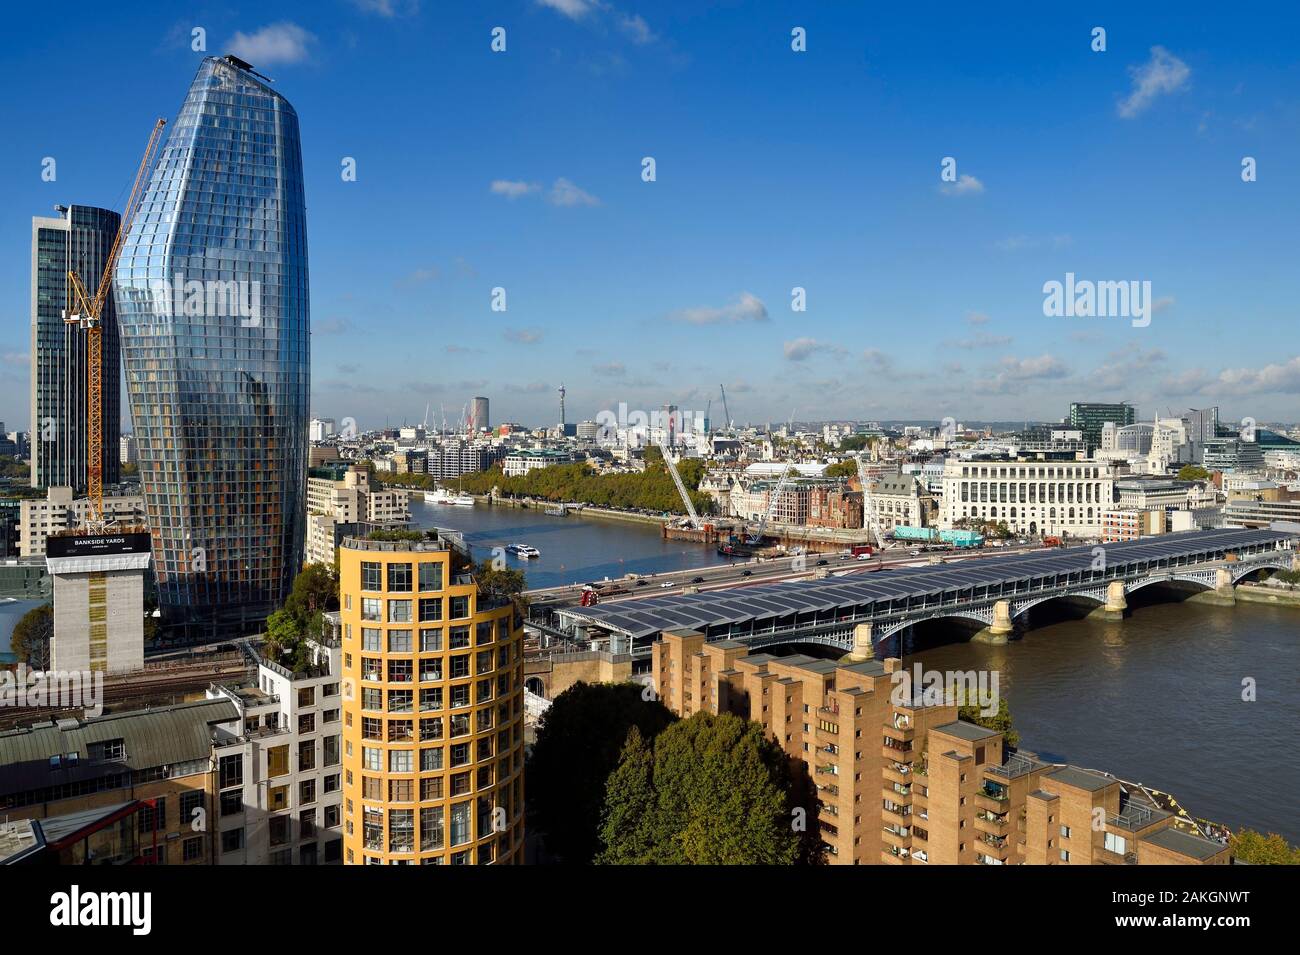 Royaume-uni, Londres, le Blackfriars Railway Bridge sur la Tamise, dominé par les gratte-ciel une gauche Blackfriars Banque D'Images